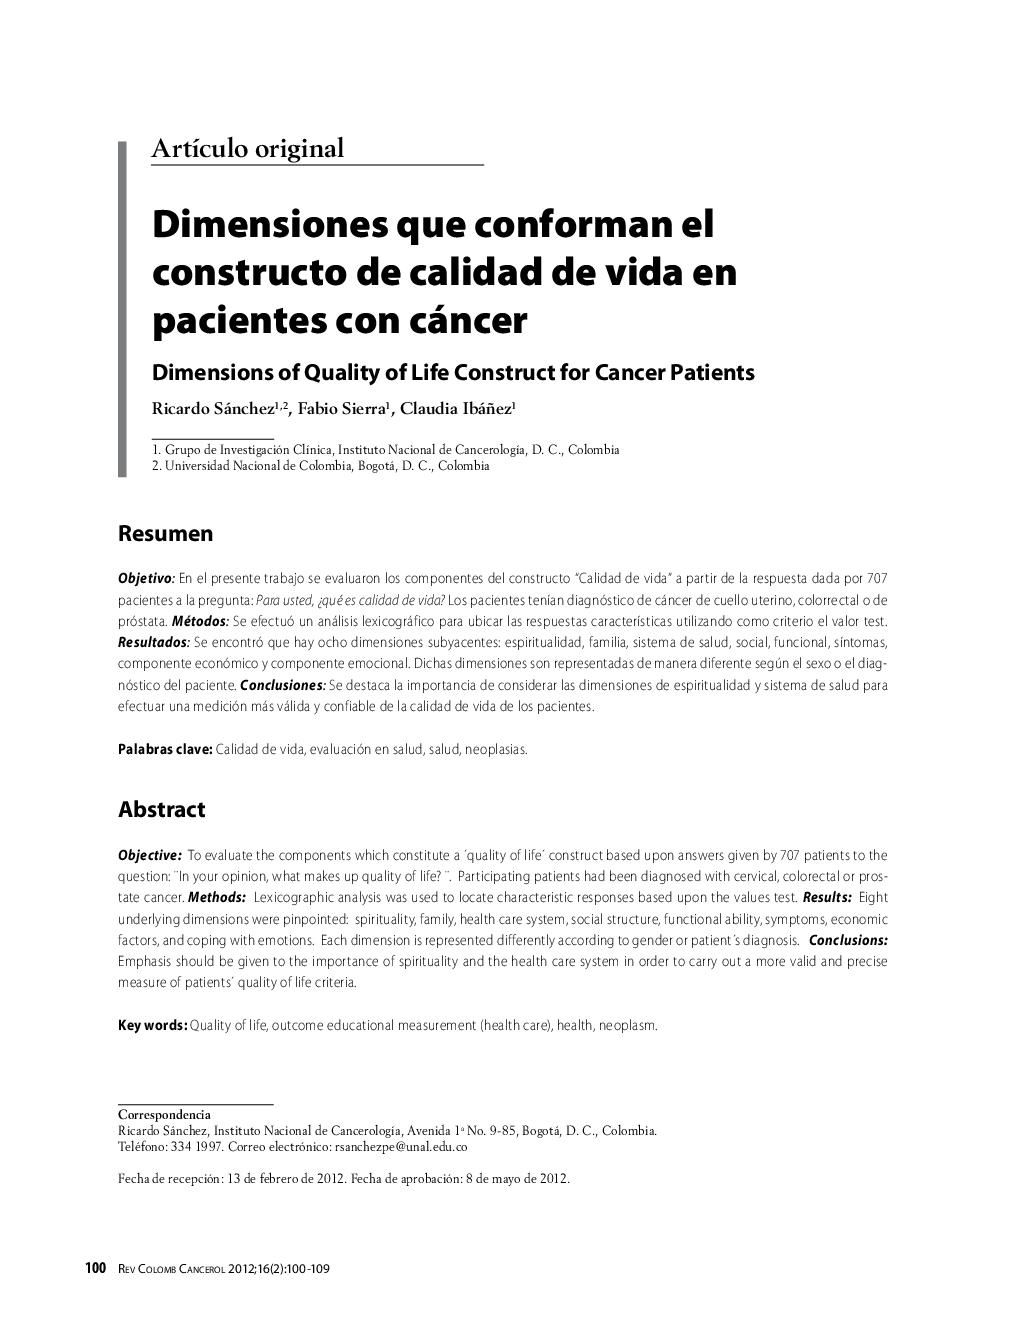 Dimensiones que conforman el constructo de calidad de vida en pacientes con cáncerDimensions of Quality of Life Construct for Cancer Patients